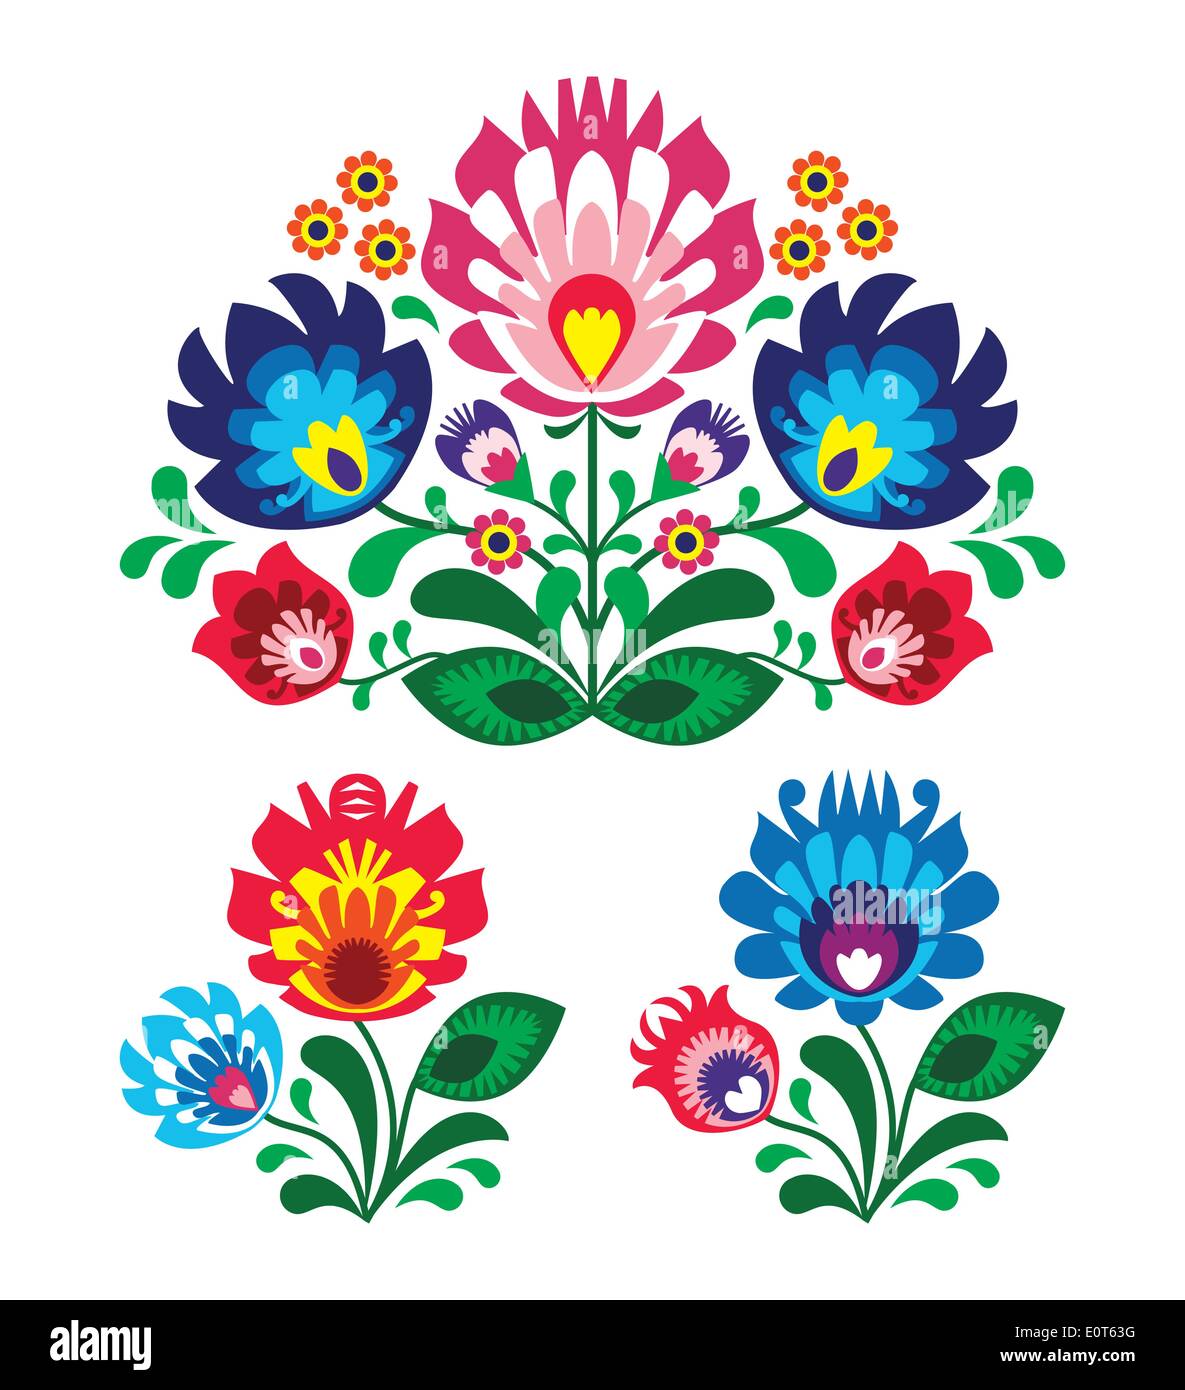 Motif floral broderie folklorique polonais Illustration de Vecteur